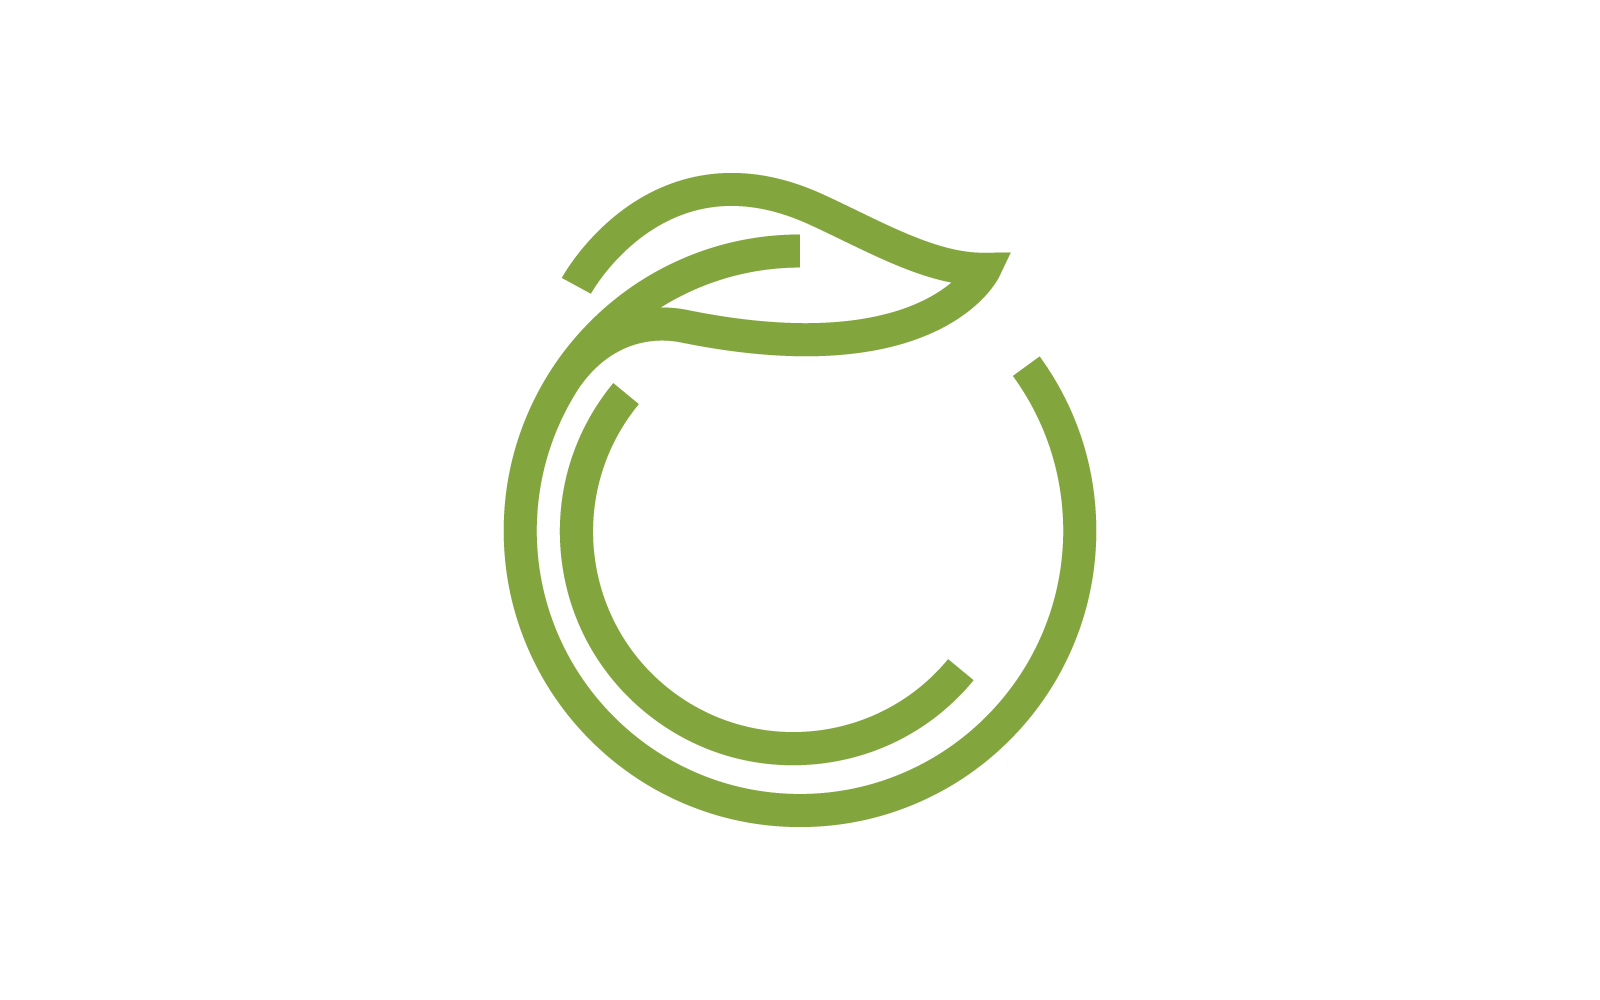 Green leaf illustration nature logo flat design